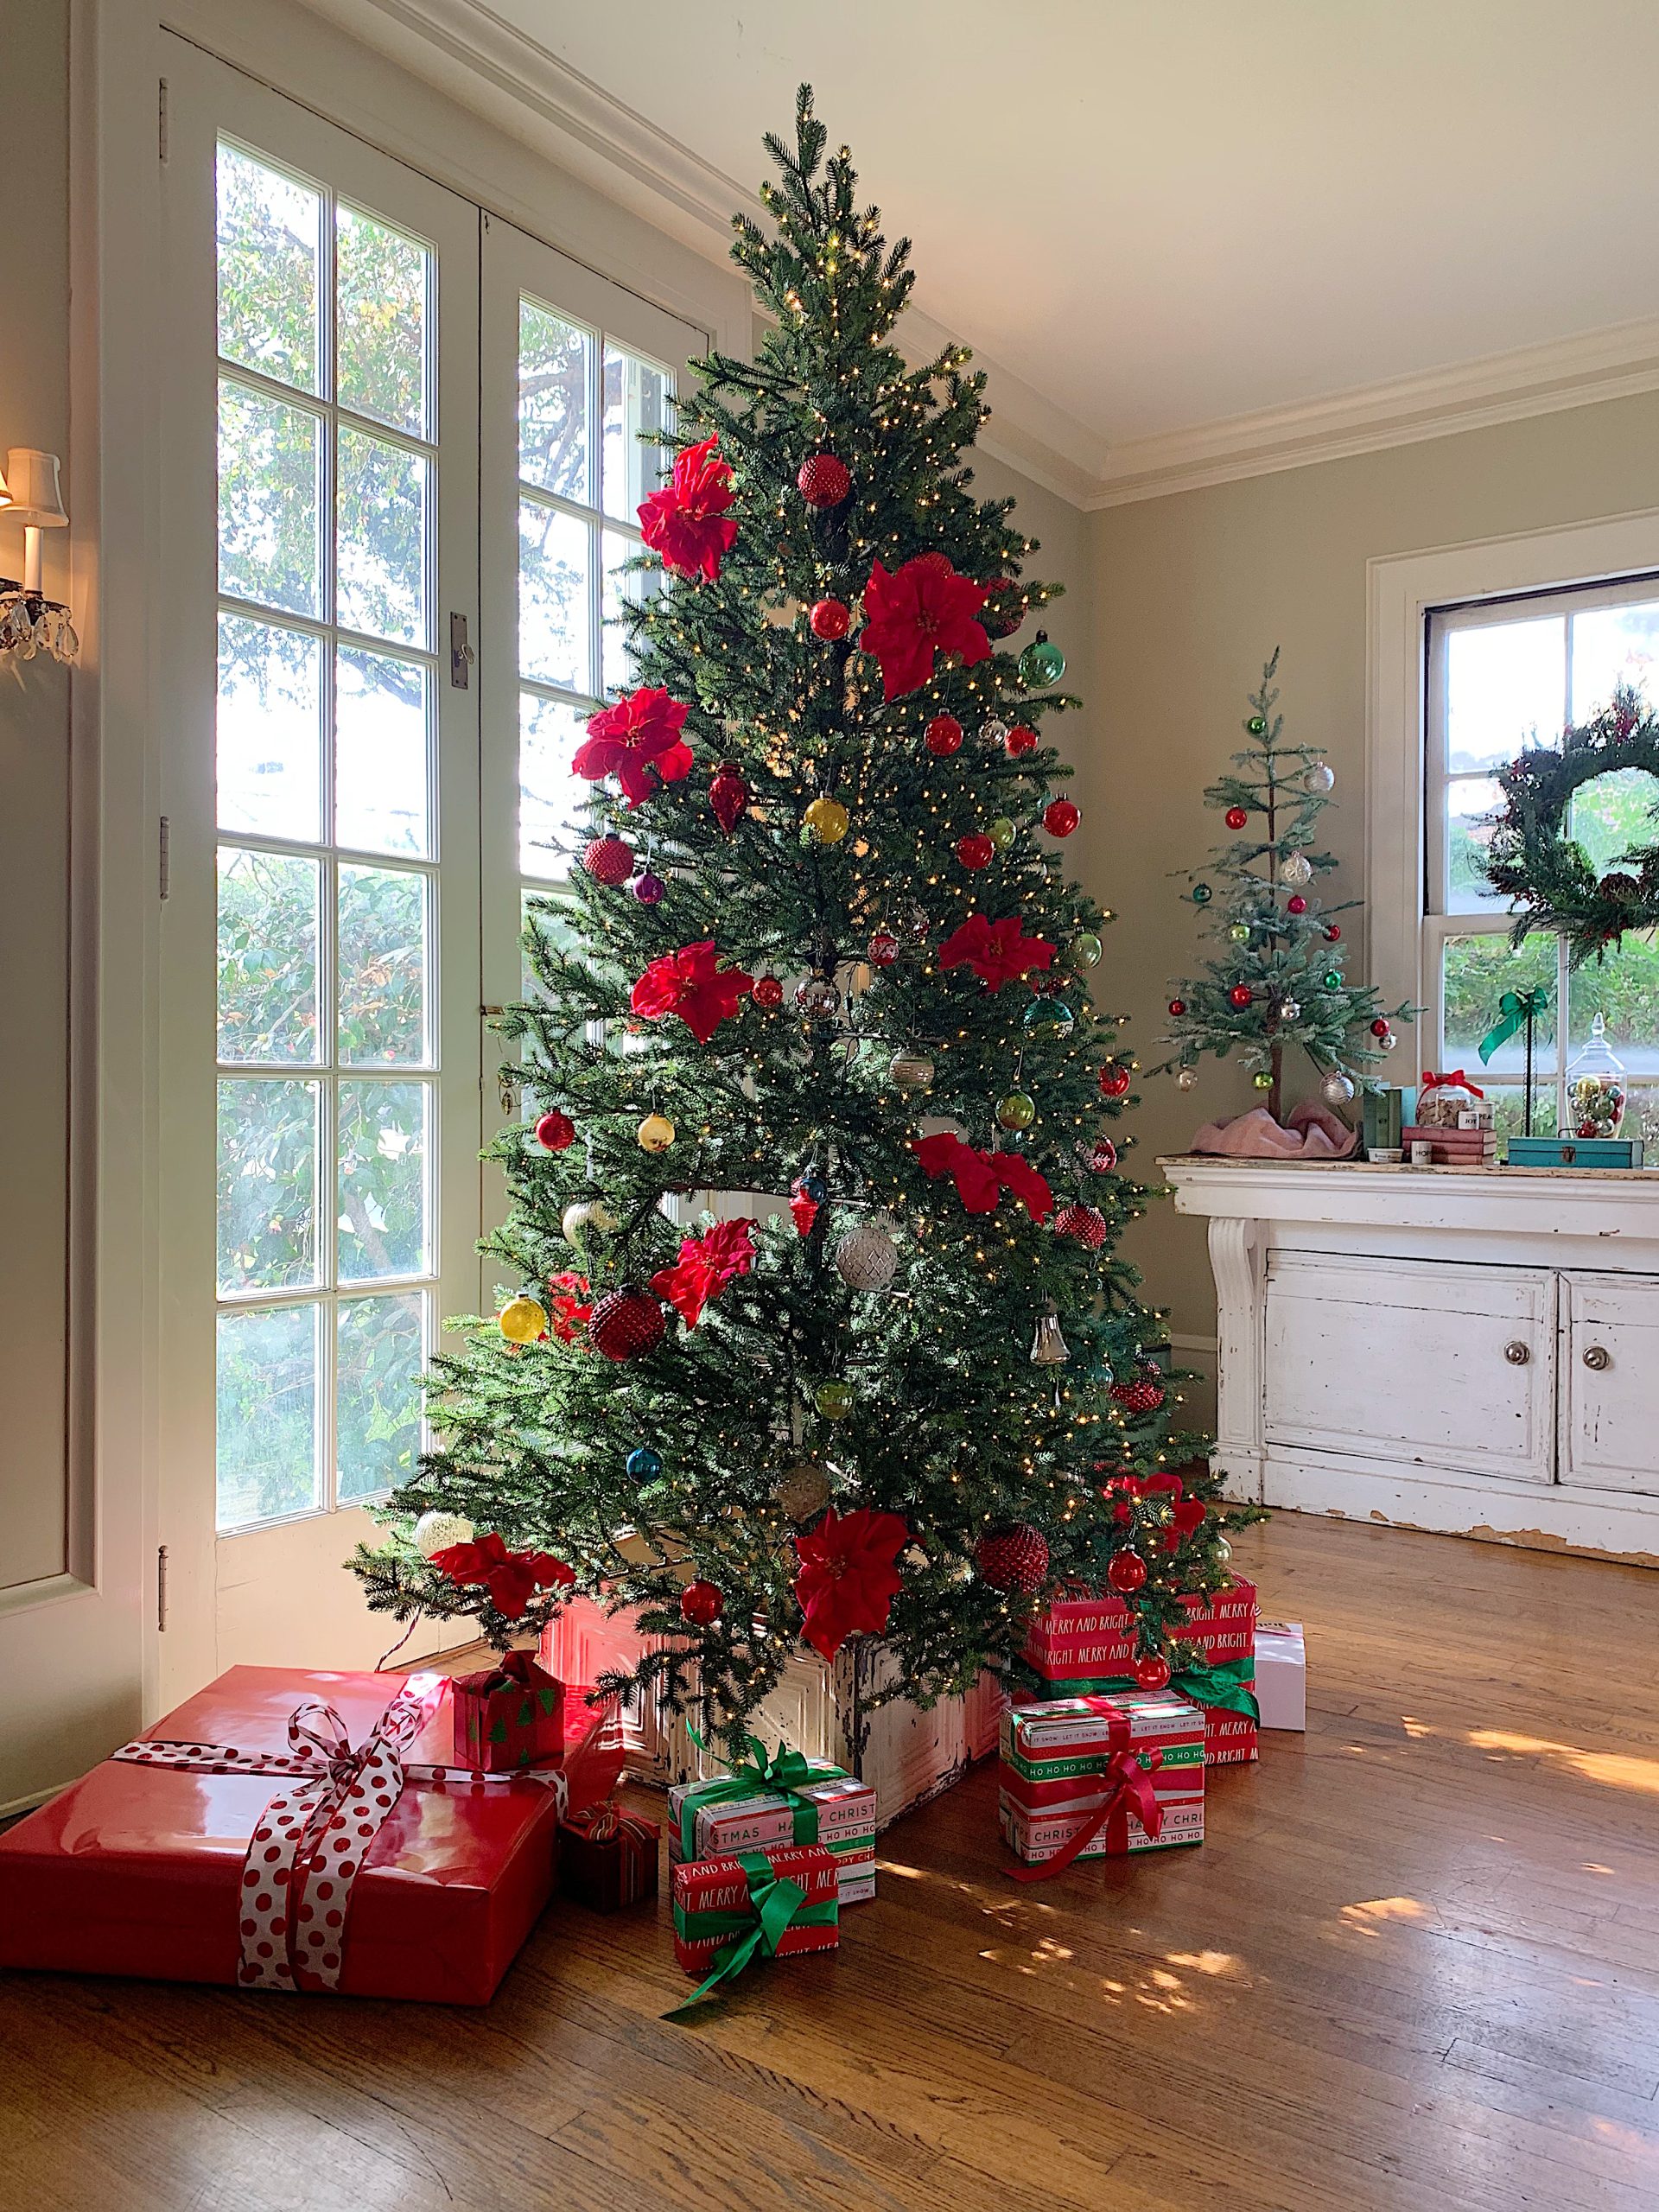 Christmas Tree Collar and Gifts